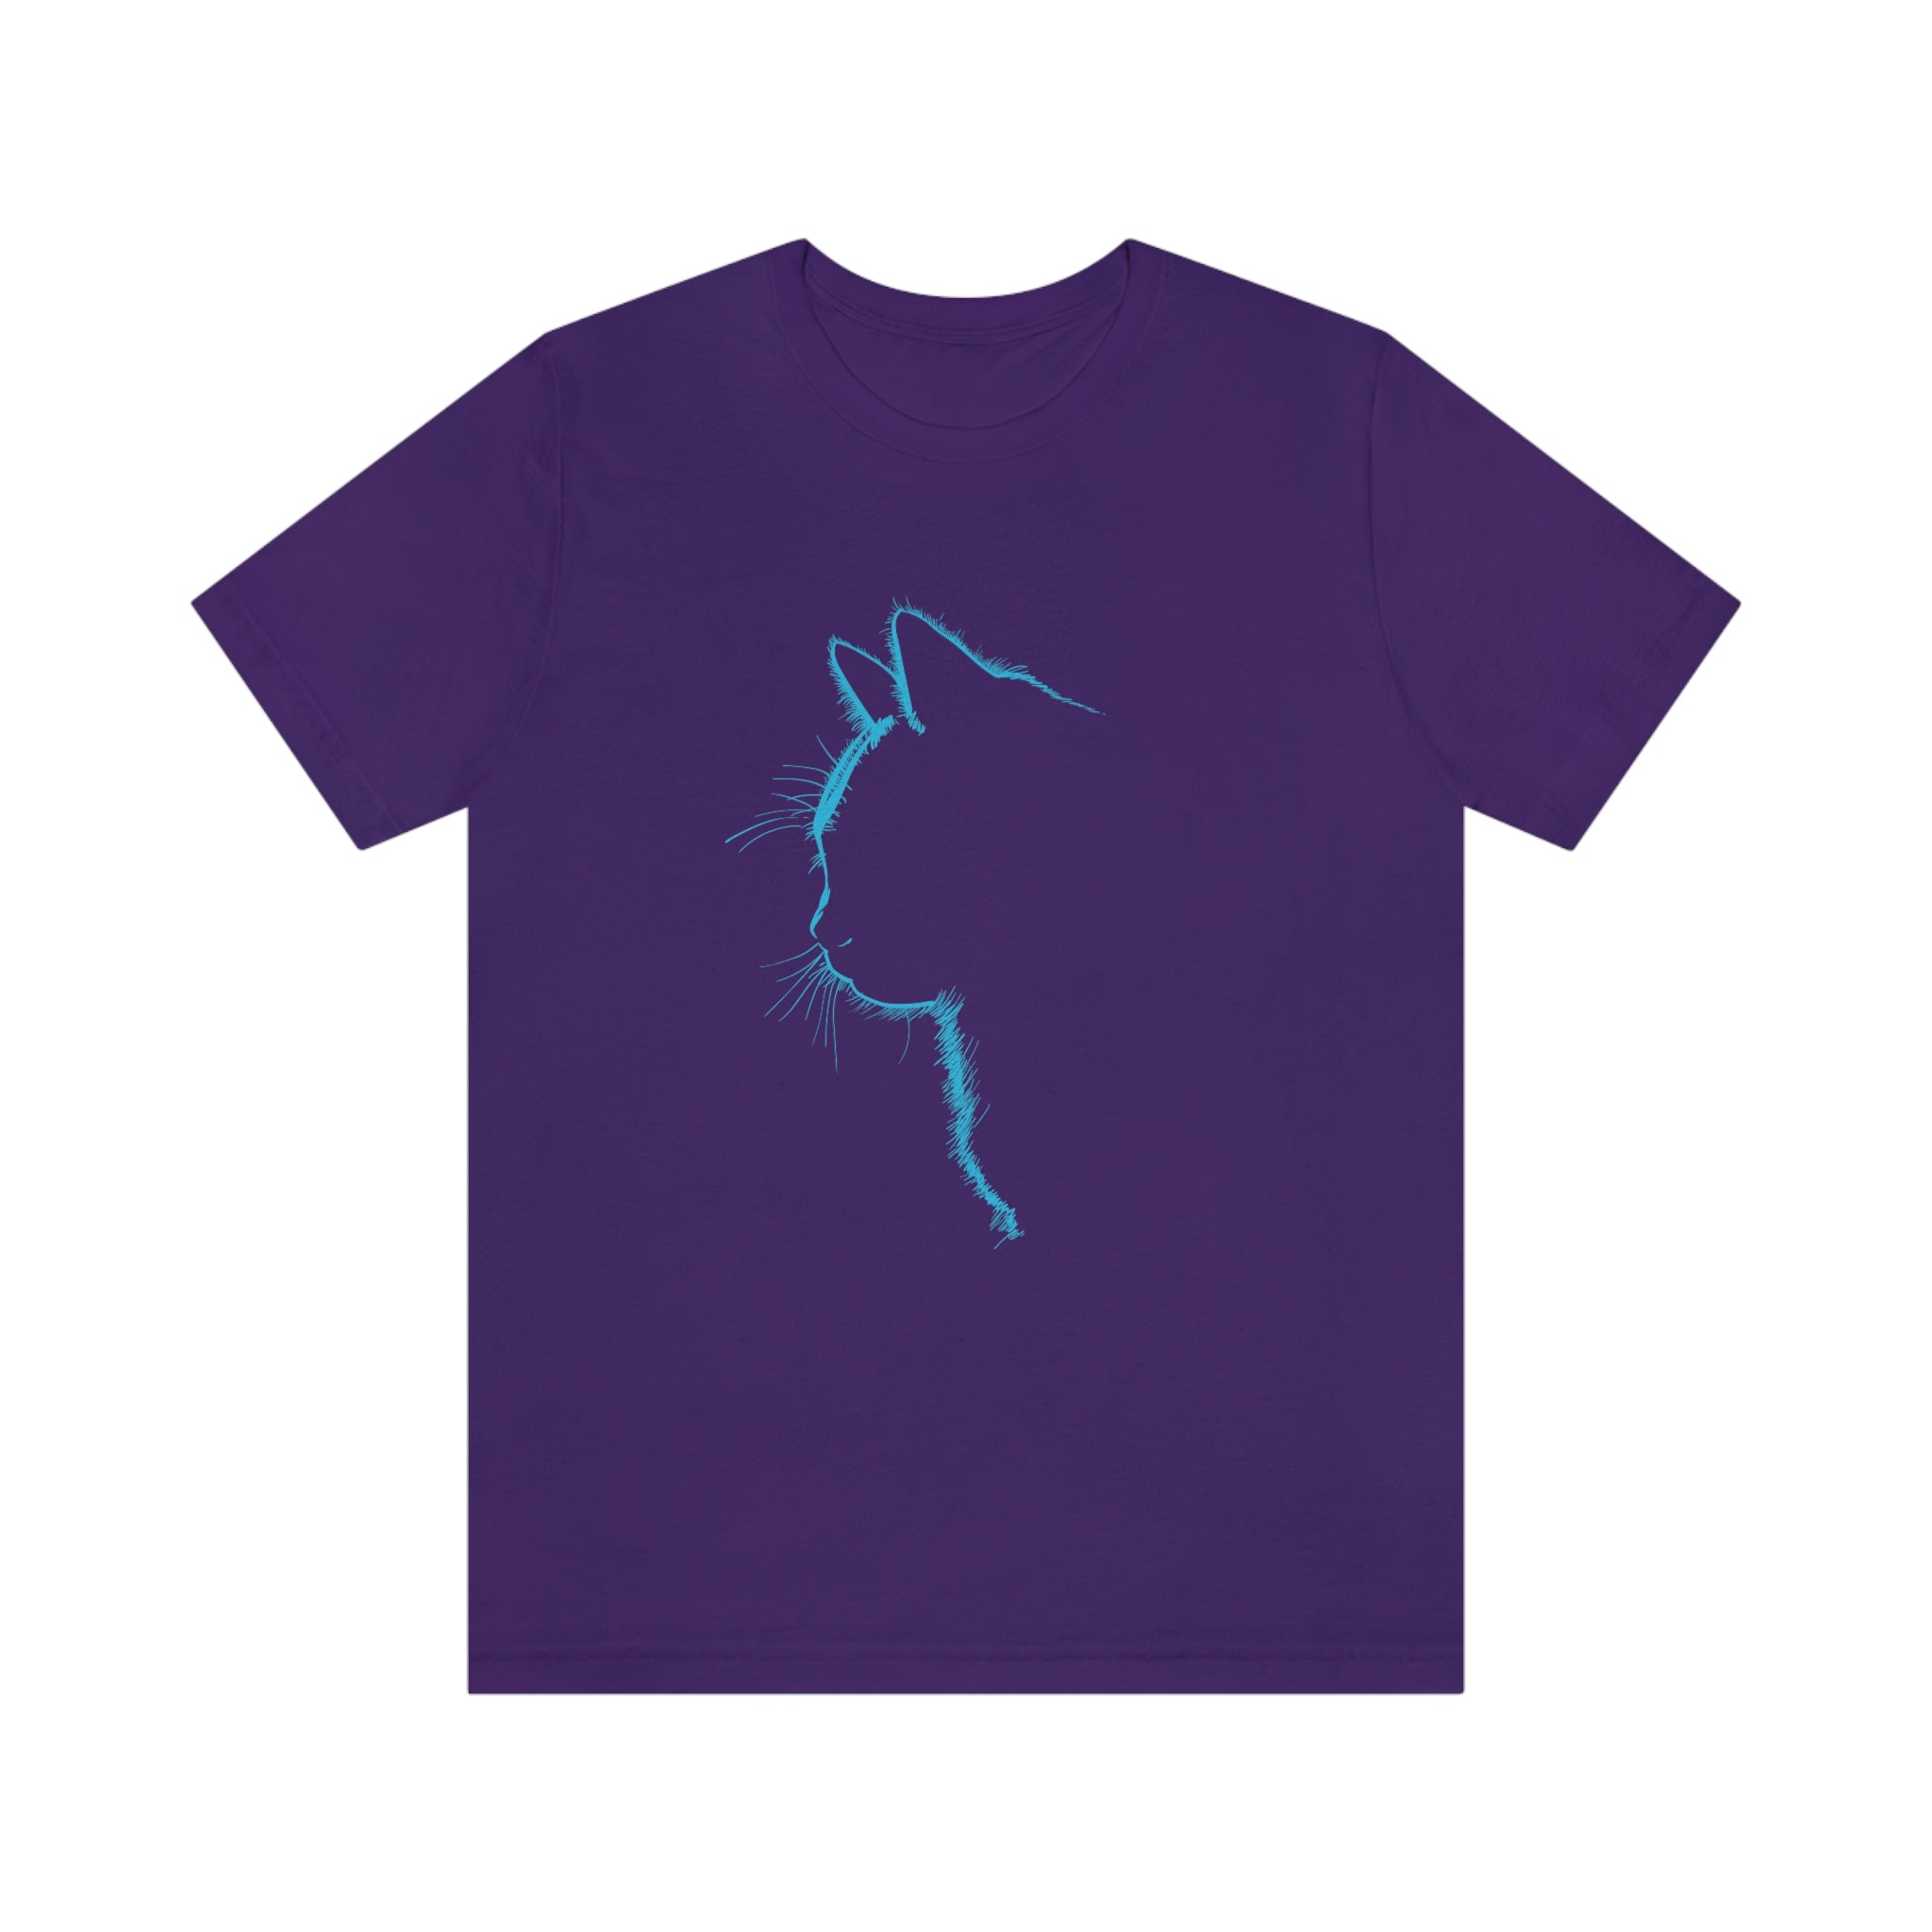 Cat Silhouette - Blue : Unisex 100% Premium Cotton T-Shirt by Bella+Canvas